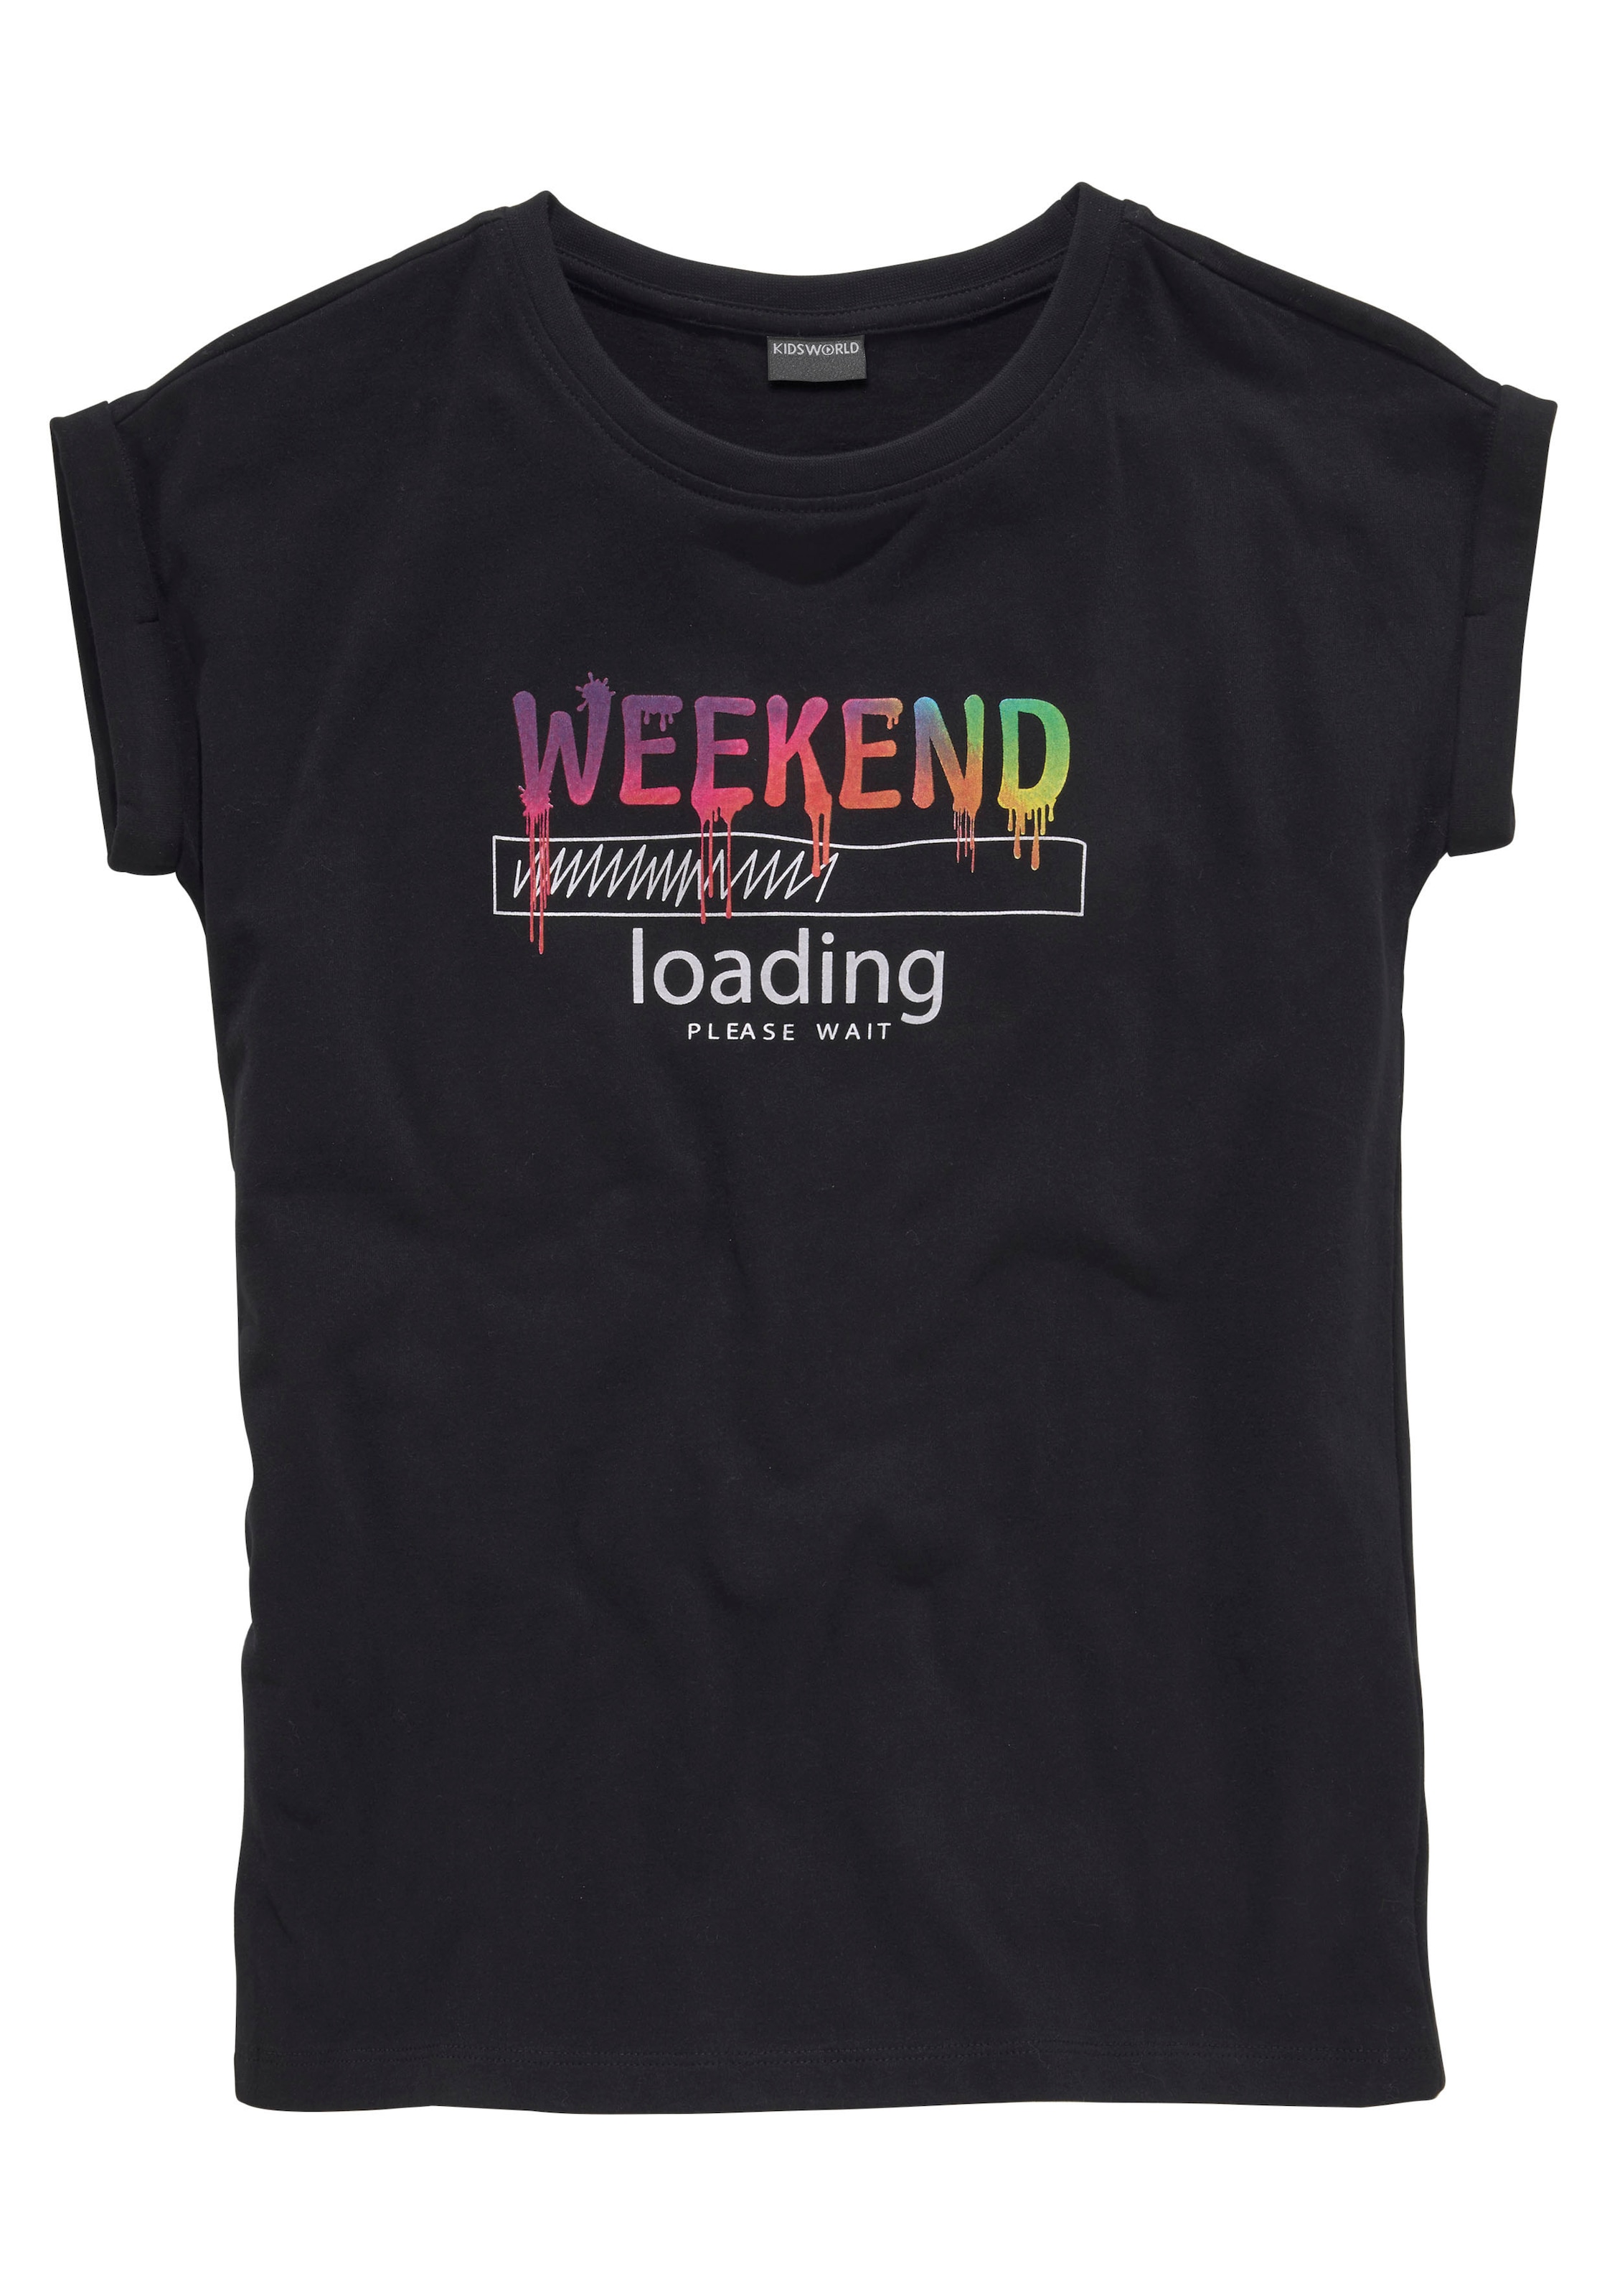 ♕ »WEEKEND bei weiter Regenbogen-Druckfarben legerer wait«, in T-Shirt Form, KIDSWORLD loading...please sind unterschiedlich